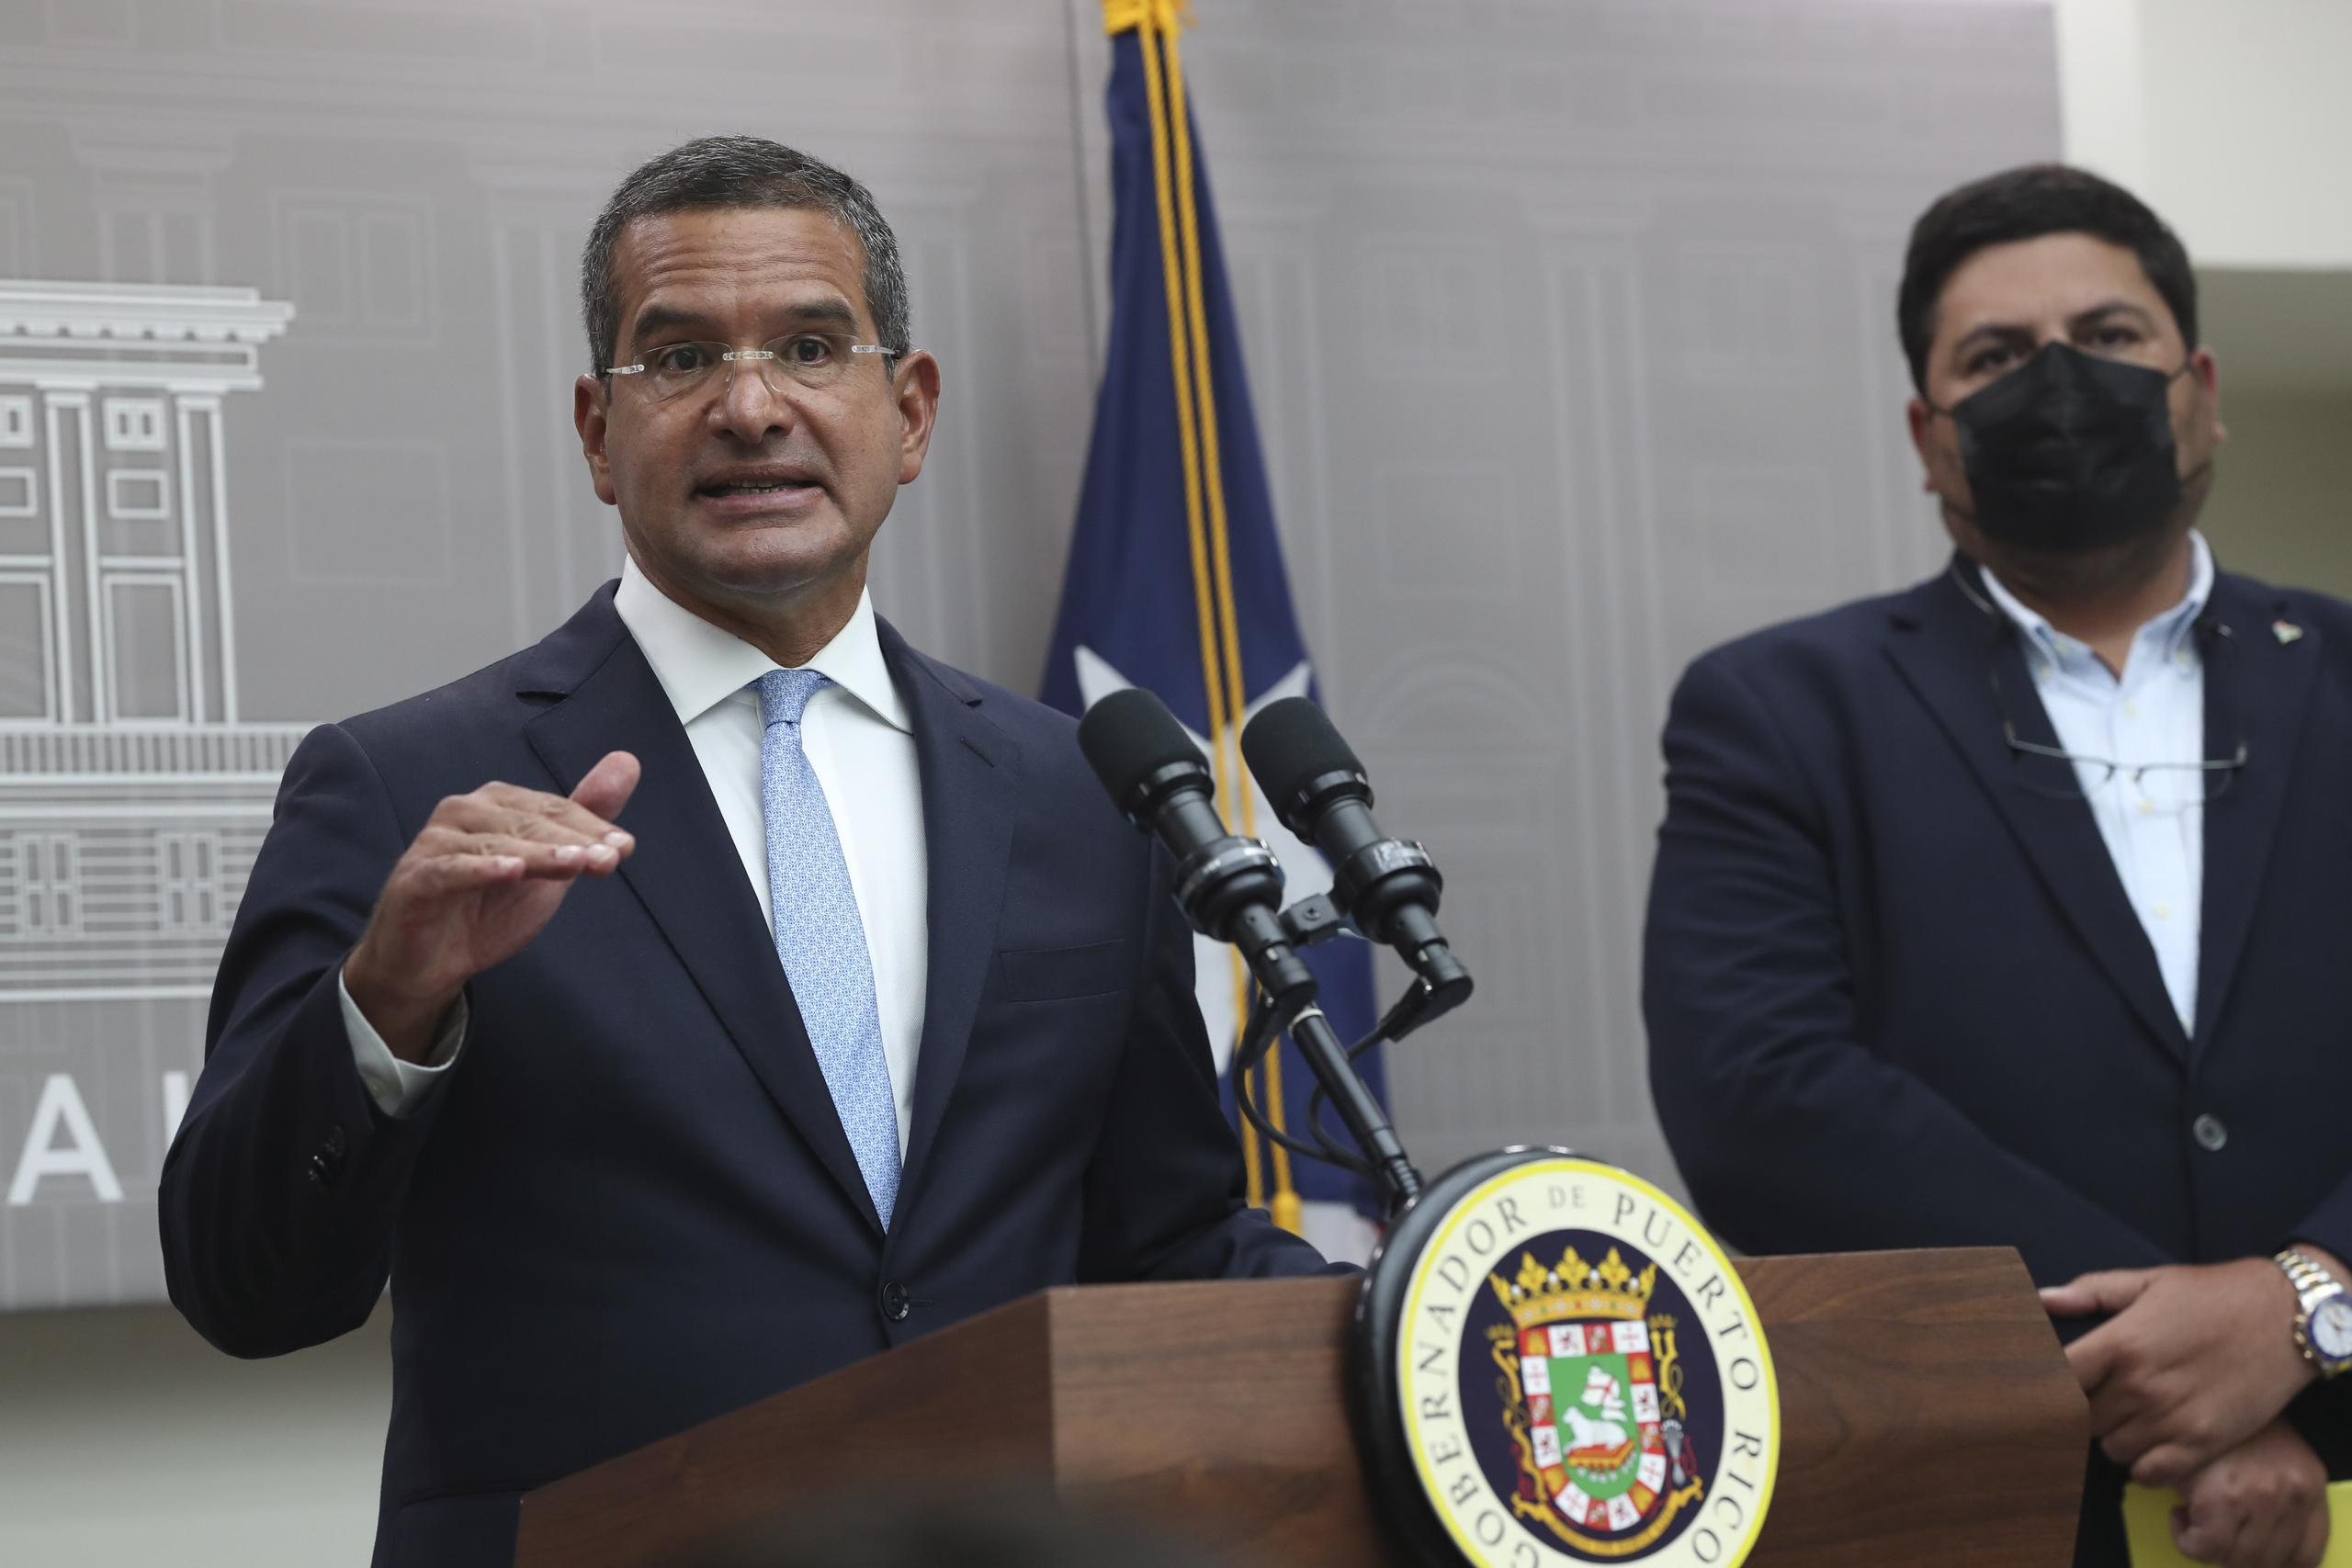 En compañía del secretario del Departamento de Salud, Carlos Mellado, el Primer Ejecutivo especificó que la nueva orden ejecutiva entrará en vigor el 2 de septiembre y estará vigente durante tres semanas hasta el 23 de septiembre.